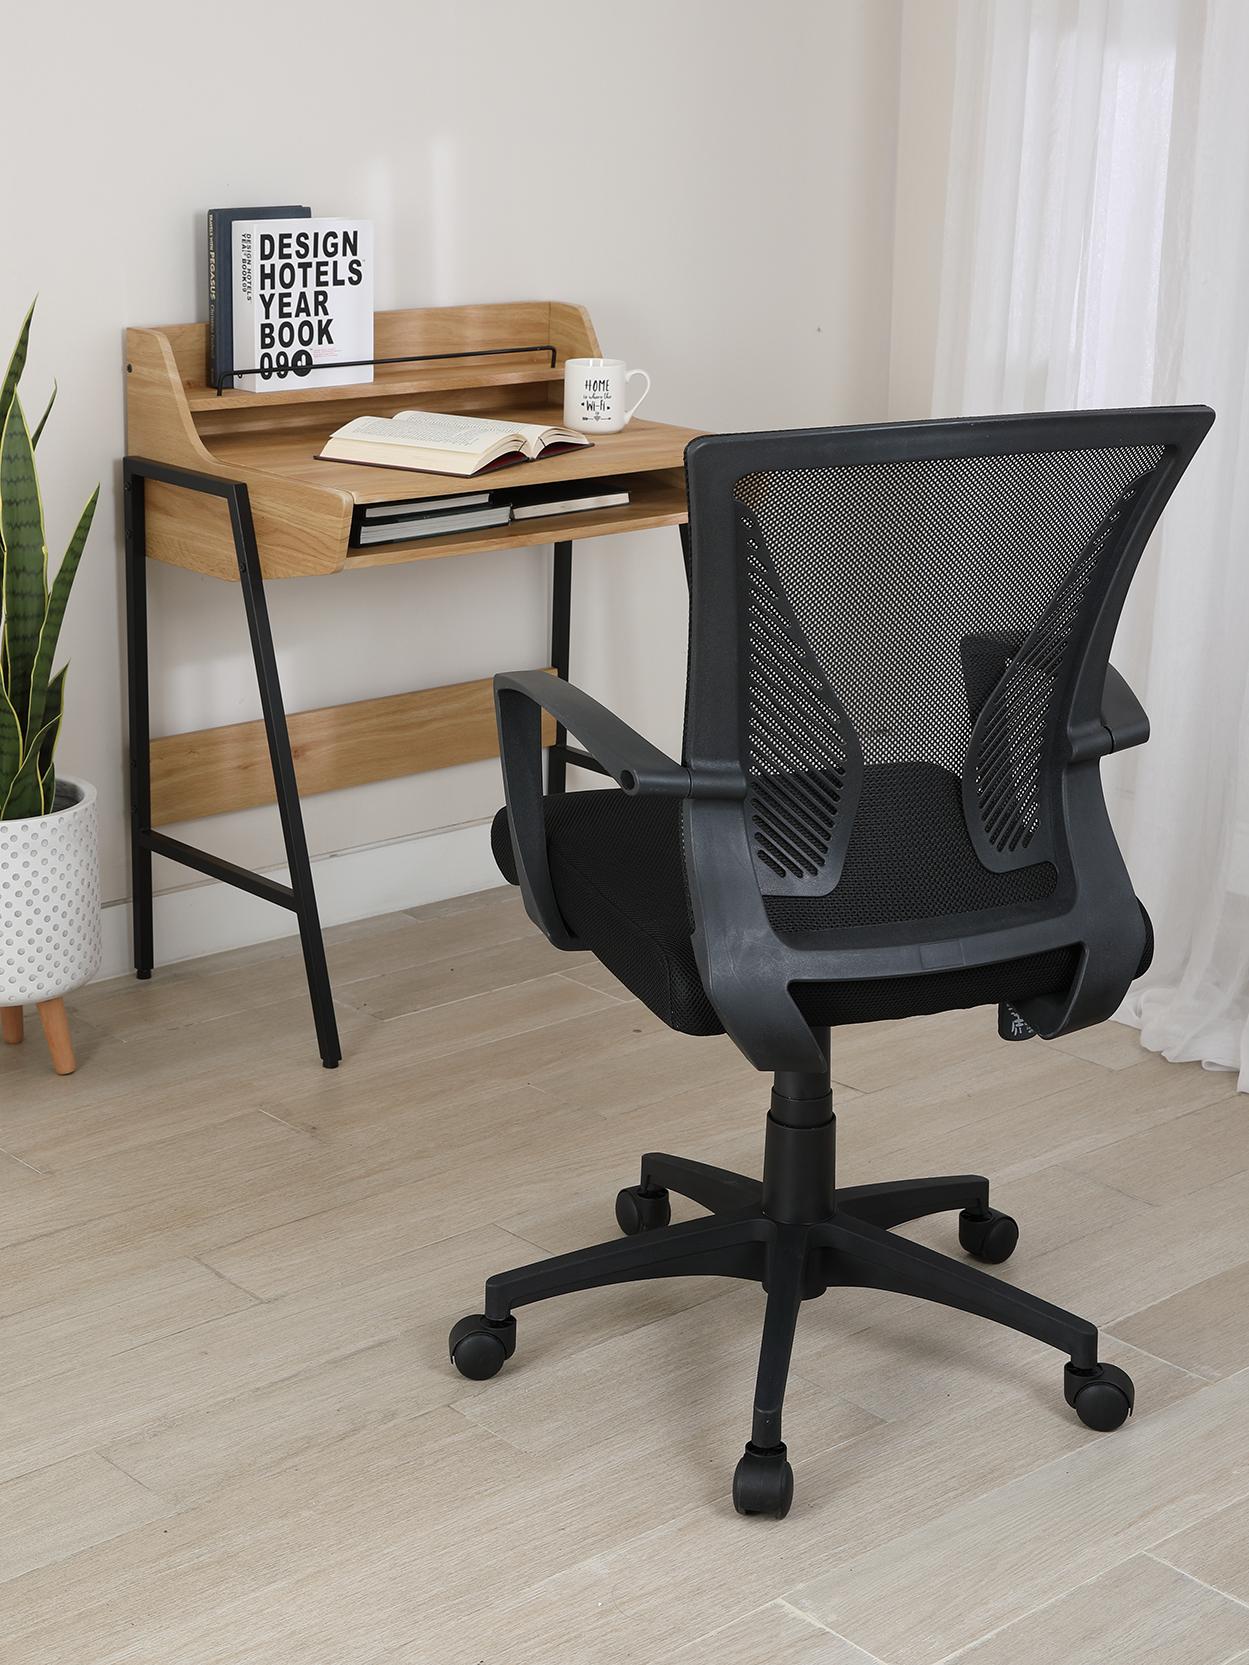 เก้าอี้สำนักงาน รุ่นเด็กซ์เตอร์ - สีดำ - เก้าอี้โต๊ะทำงาน เก้าอี้ออฟฟิศ วัสดุพลาสติกพีพี